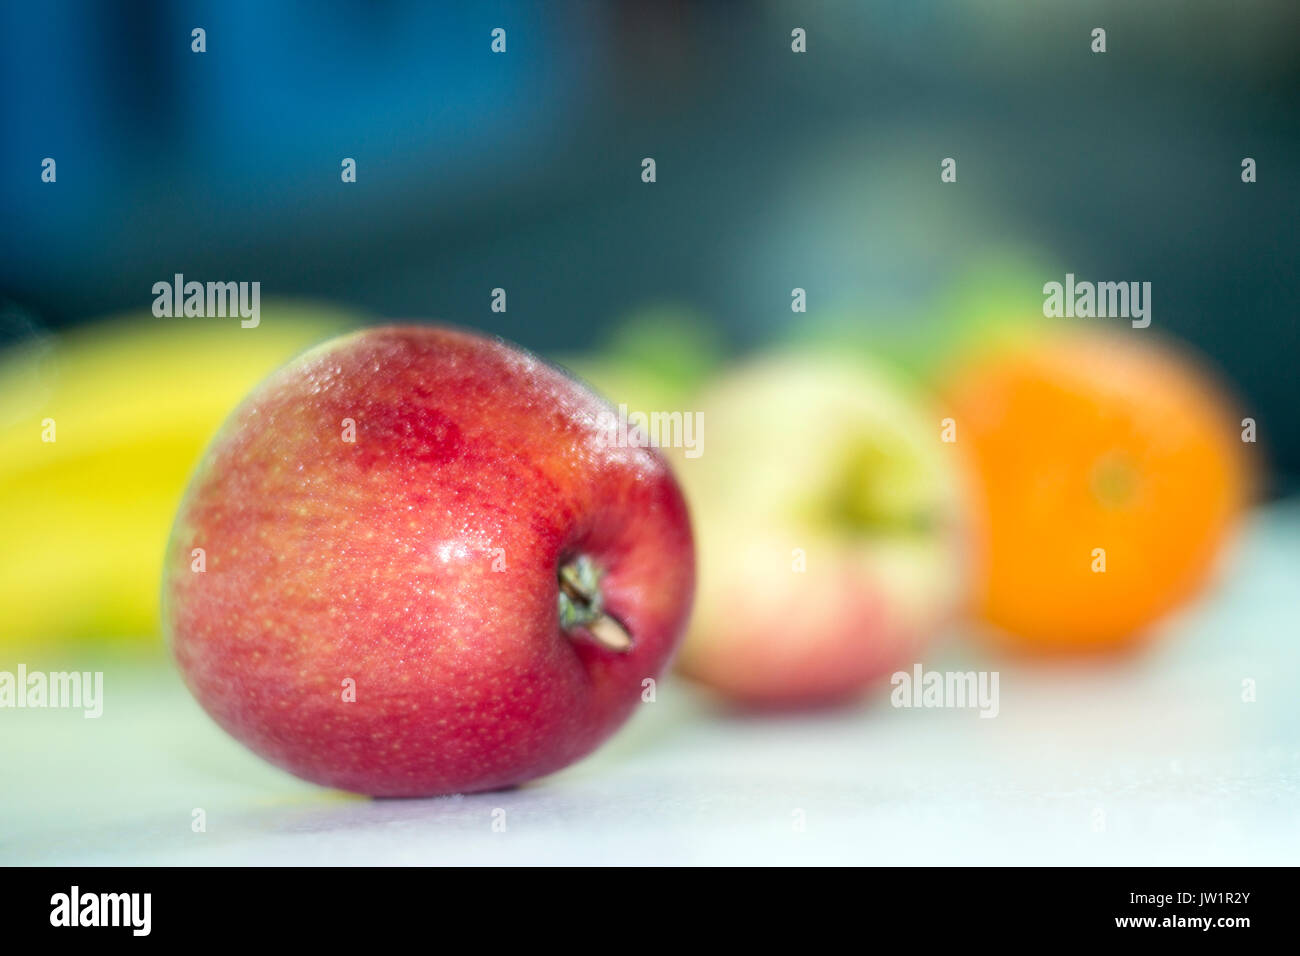 Manzana roja en meza con otras frutas desenfocadas, alimento saludable y natural con vitaminas, baja en calorías, apetecible y jugosa, de clima frío Stock Photo